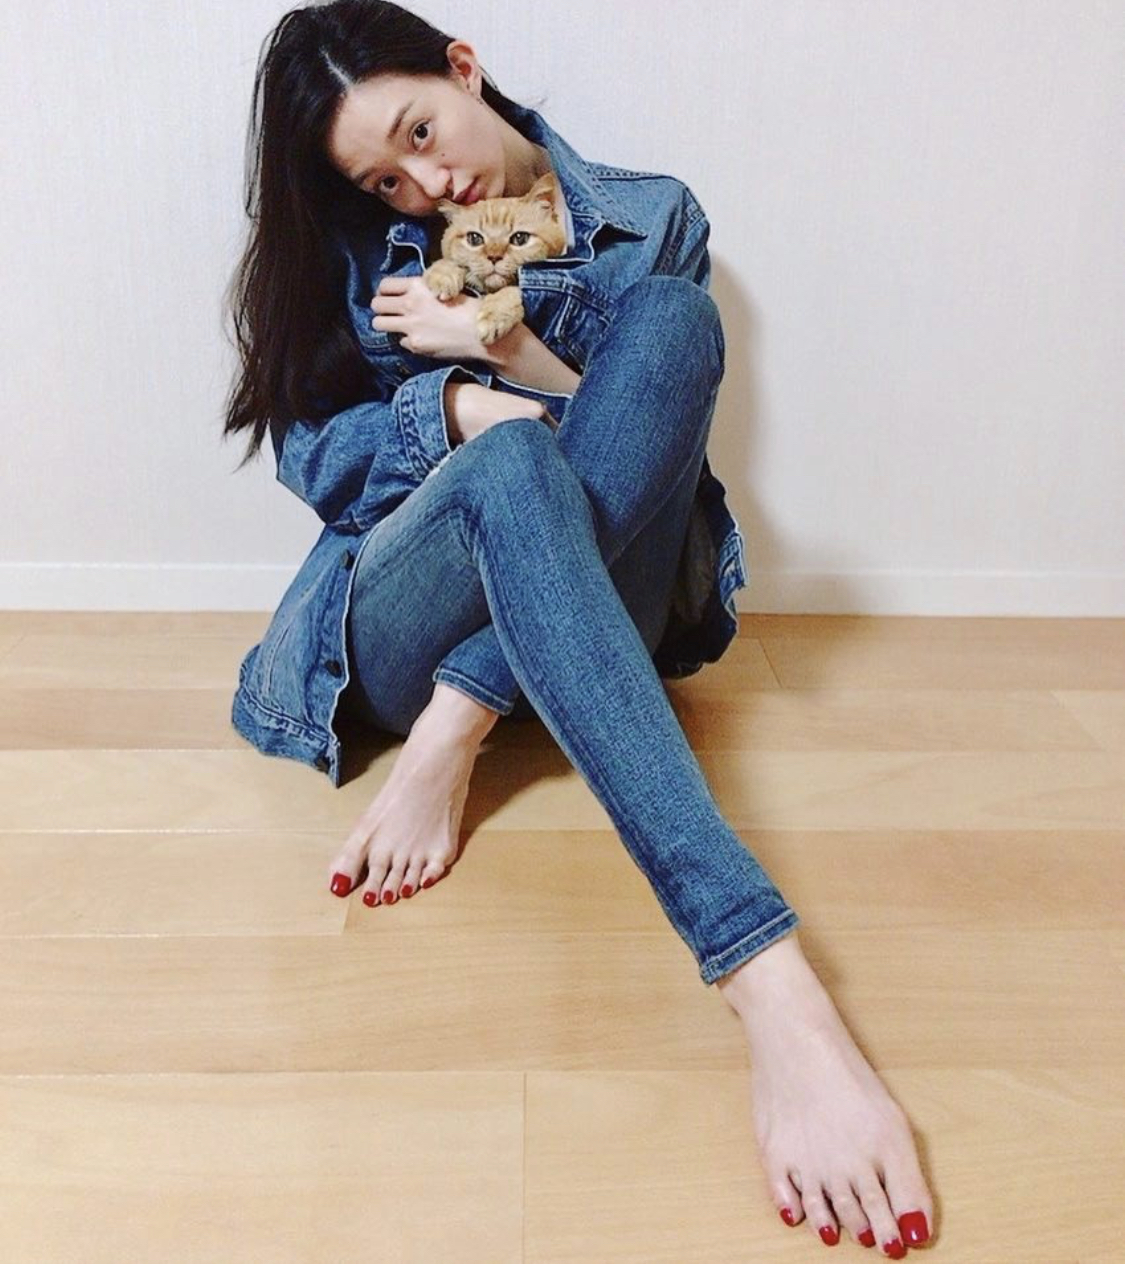 Hana Matsushima Feet